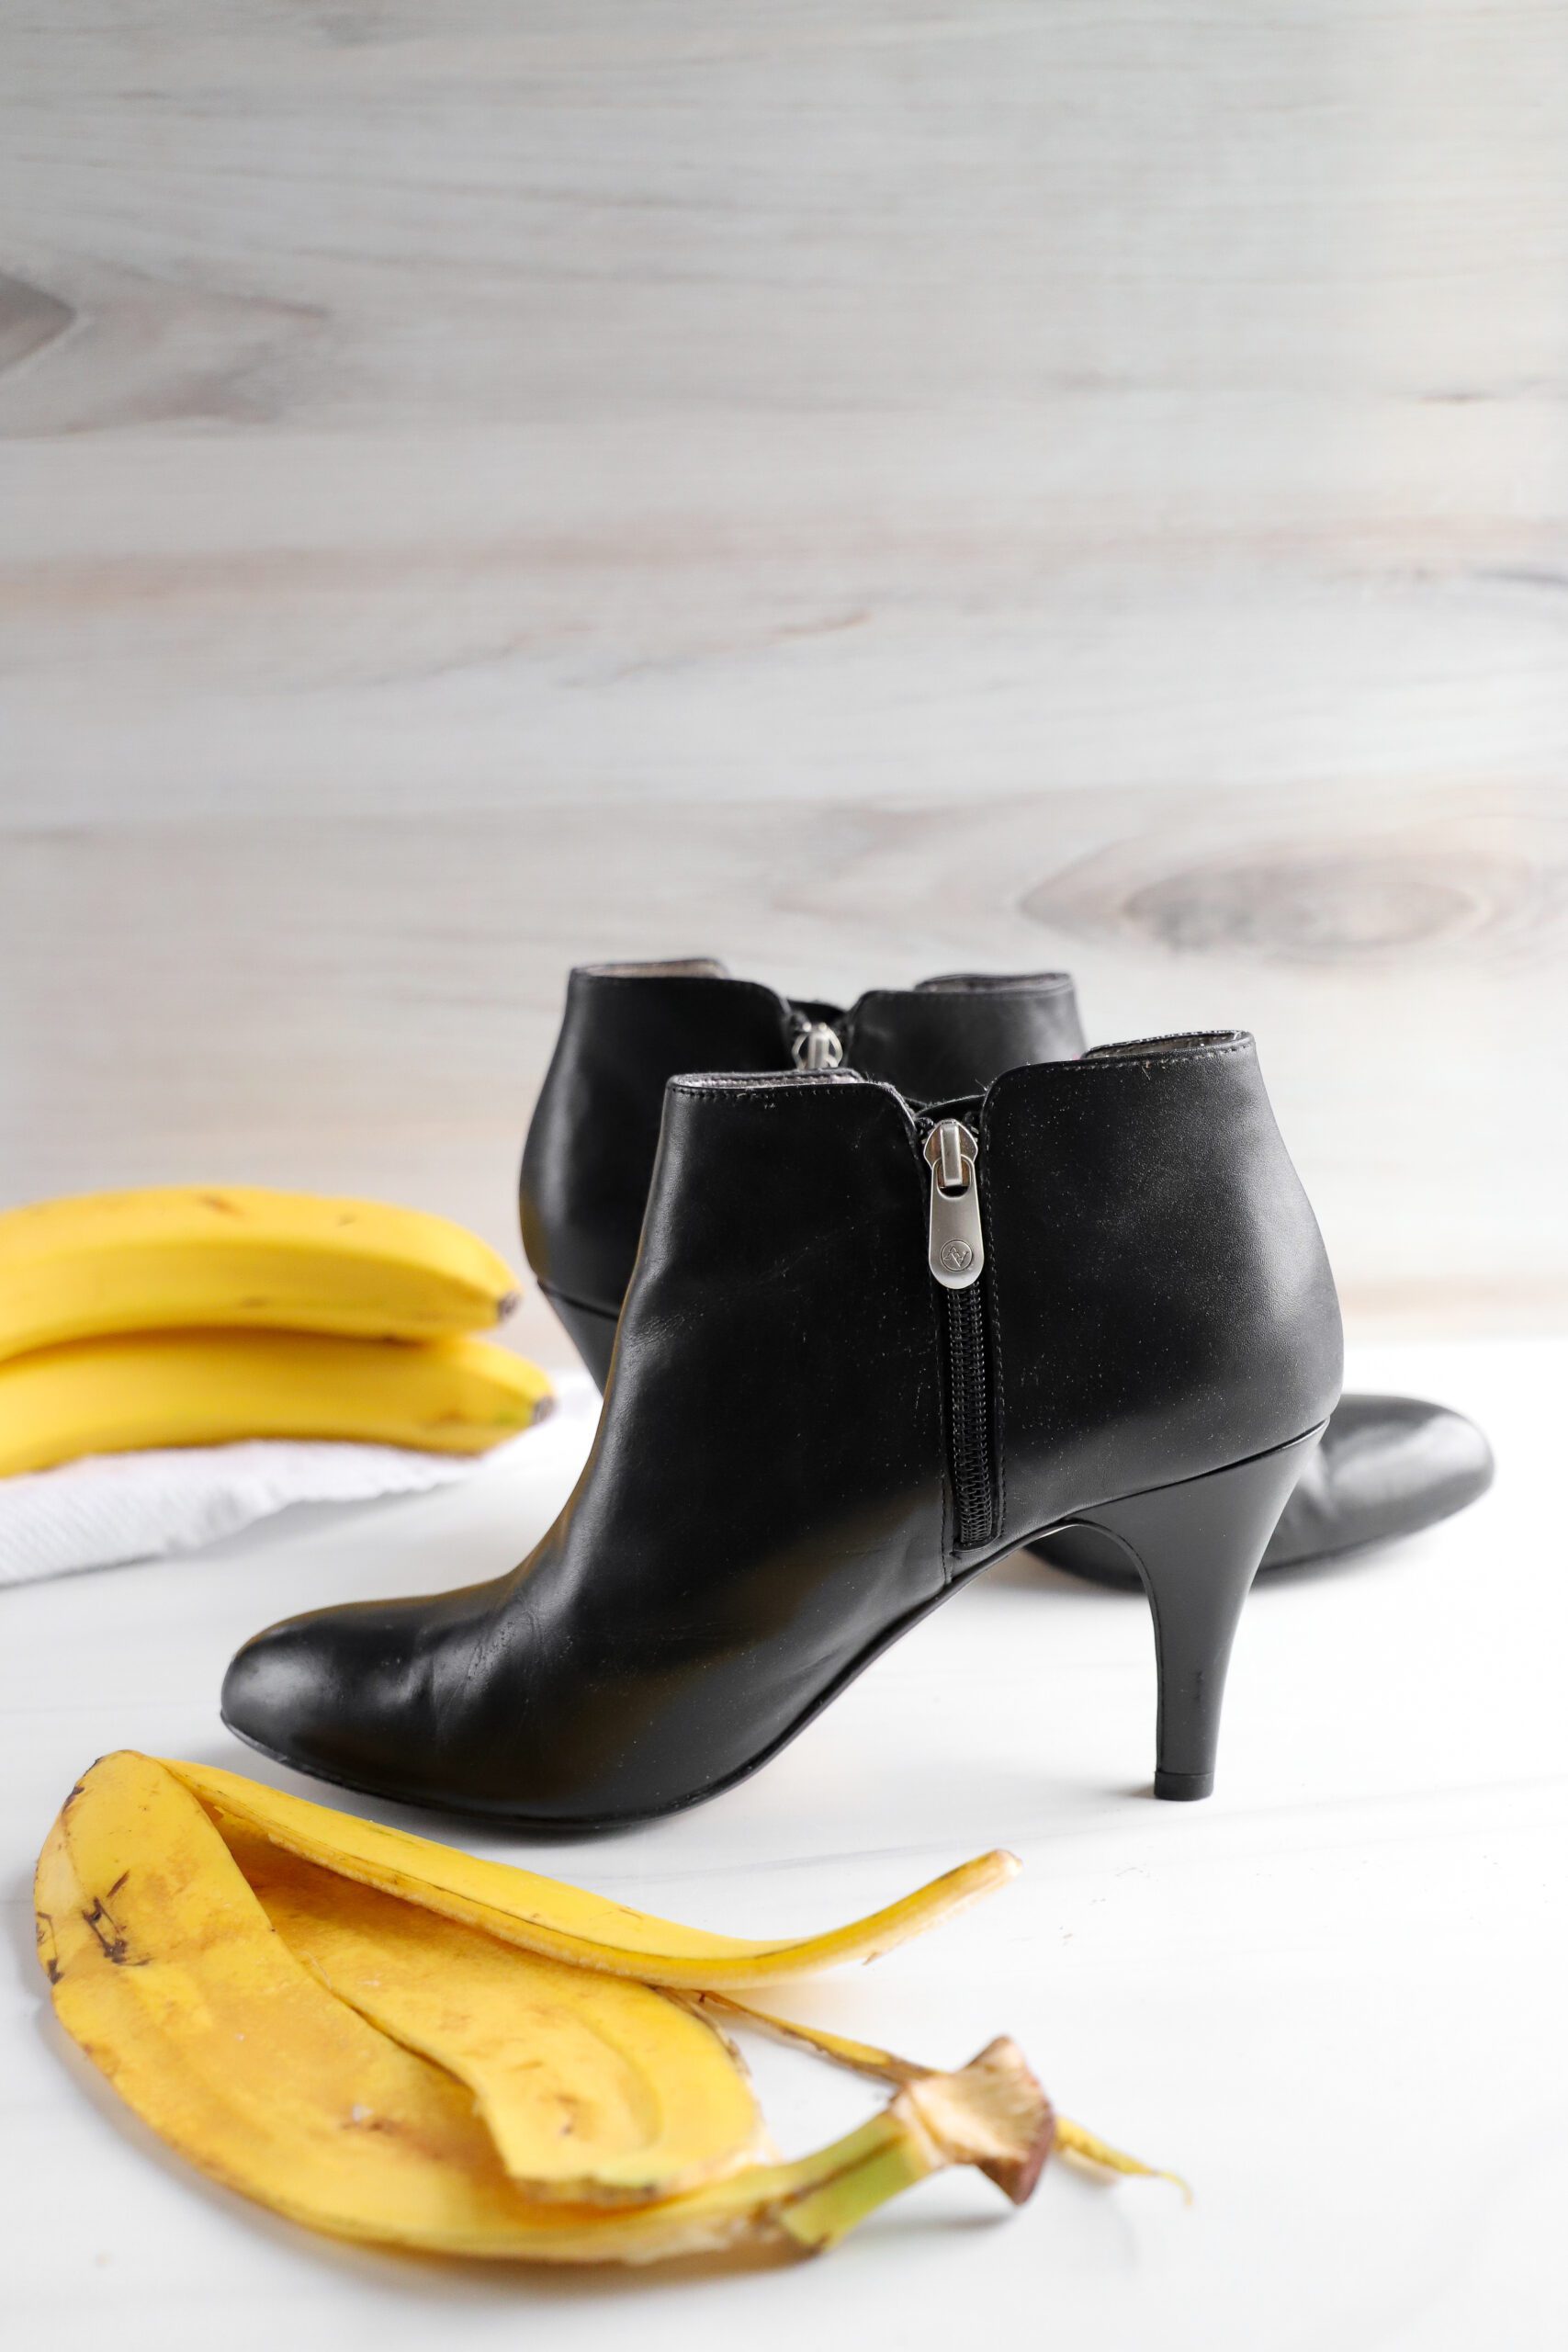 Banana peel shoe polish